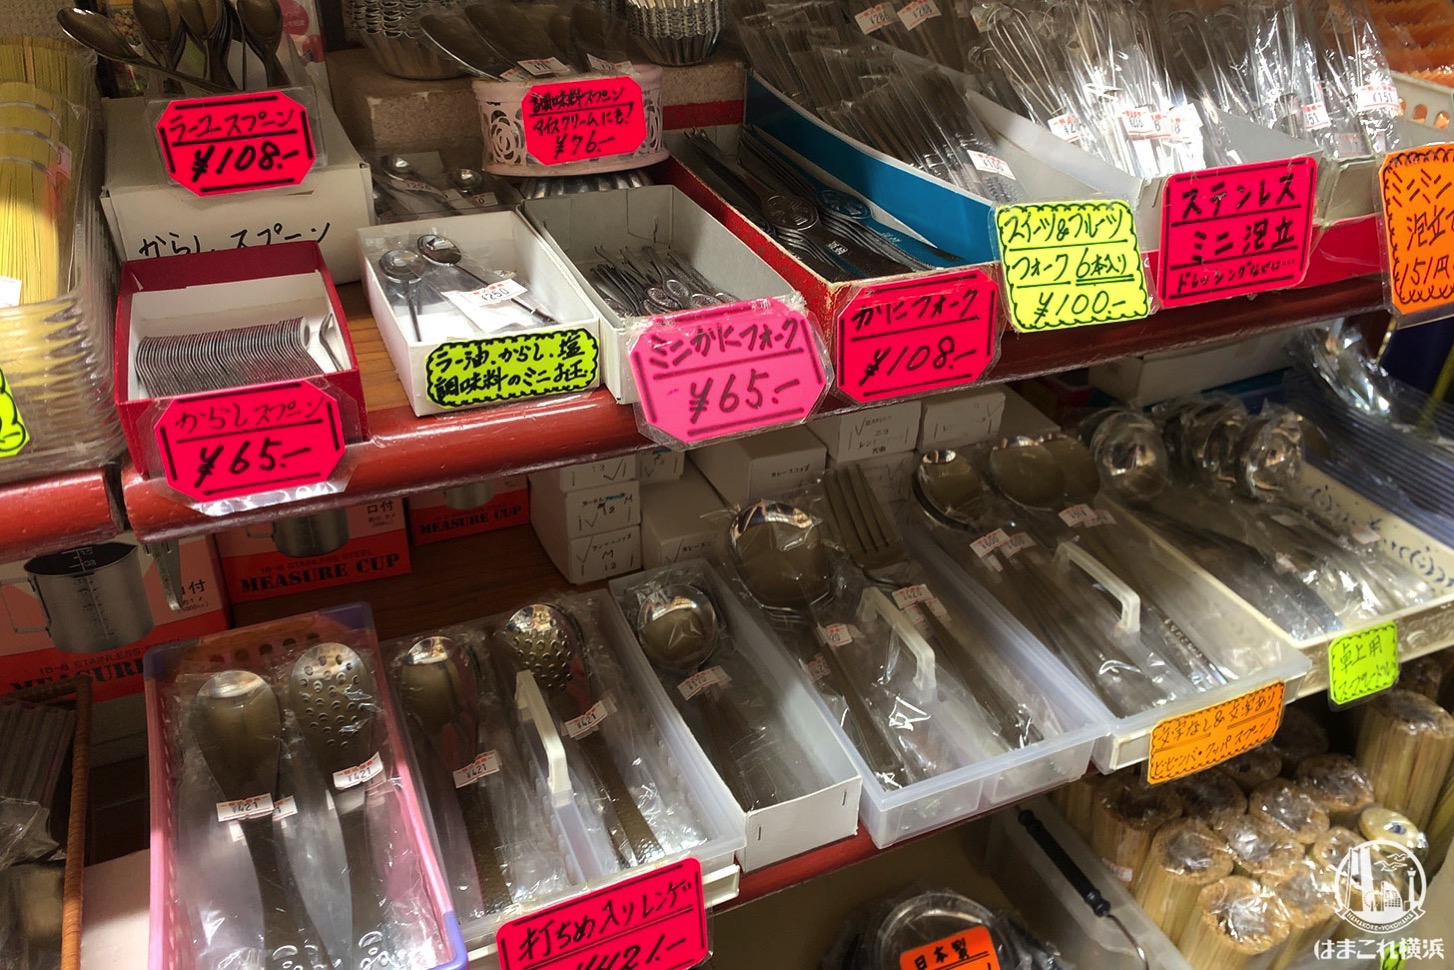 横浜中華街「照宝」は中華調理器具・食器・蒸籠が充実！観光客も安心のお店 | はまこれ横浜